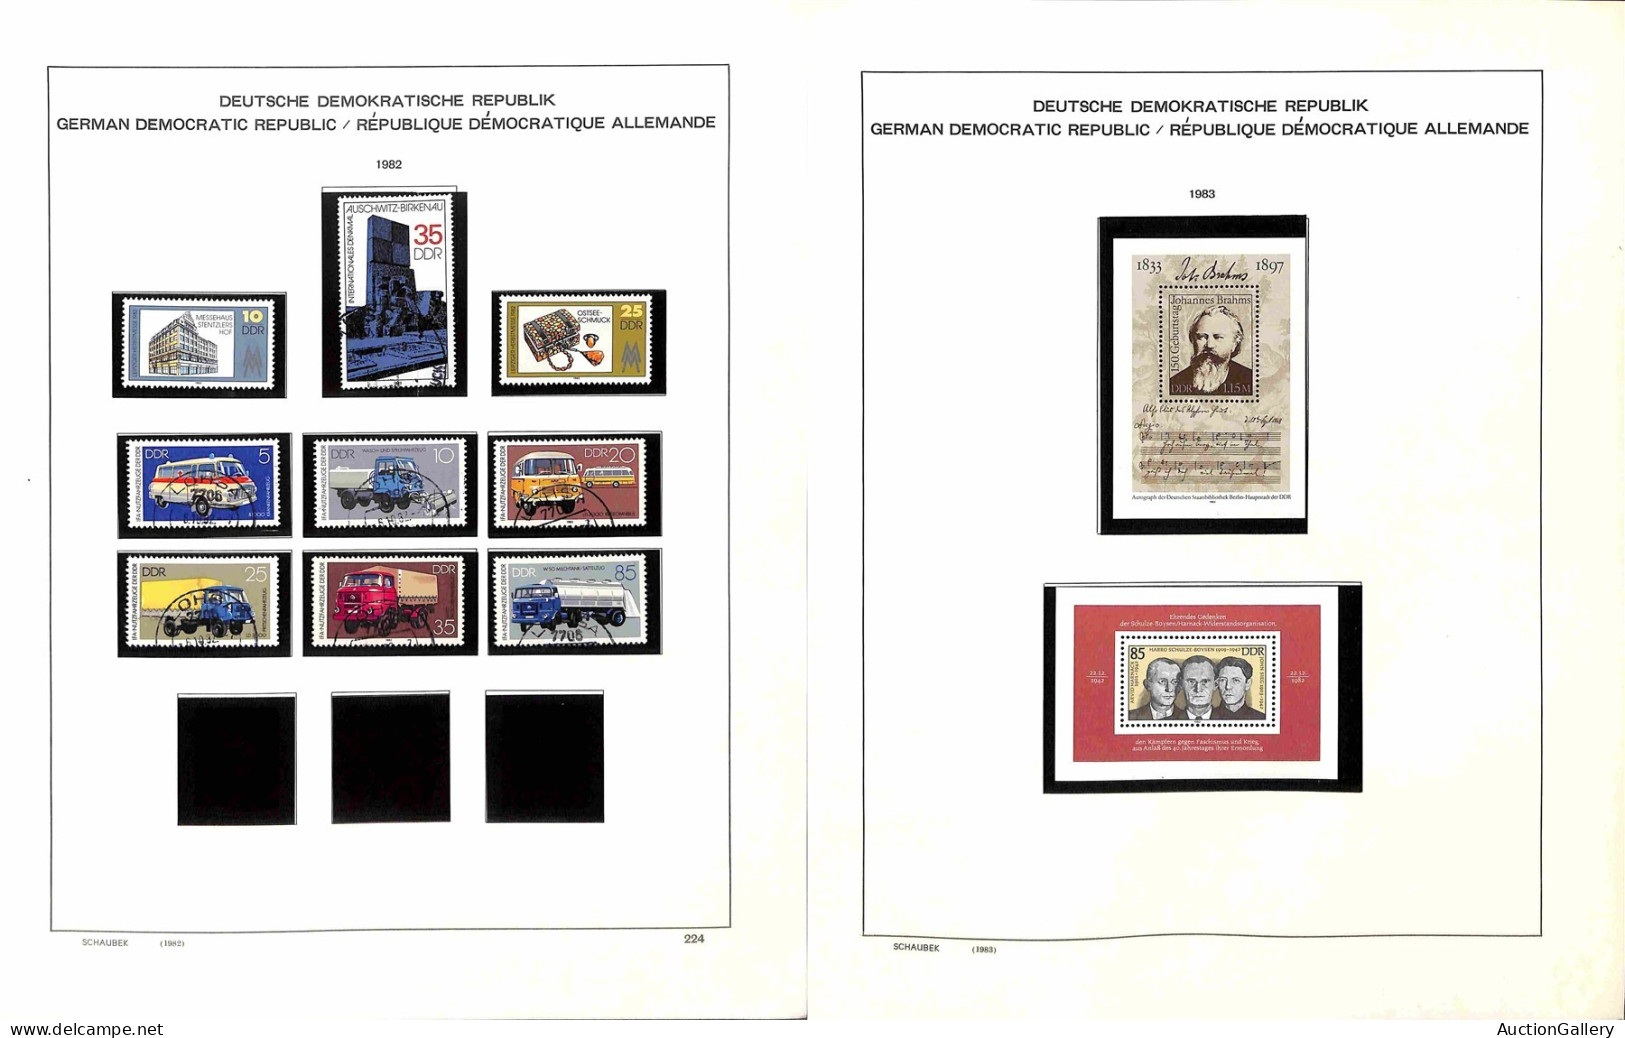 Lotti&Collezioni - Europa&Oltremare - GERMANIA DDR - 1980/1990 - Inizio di collezione mista (con presenze di valori nuov